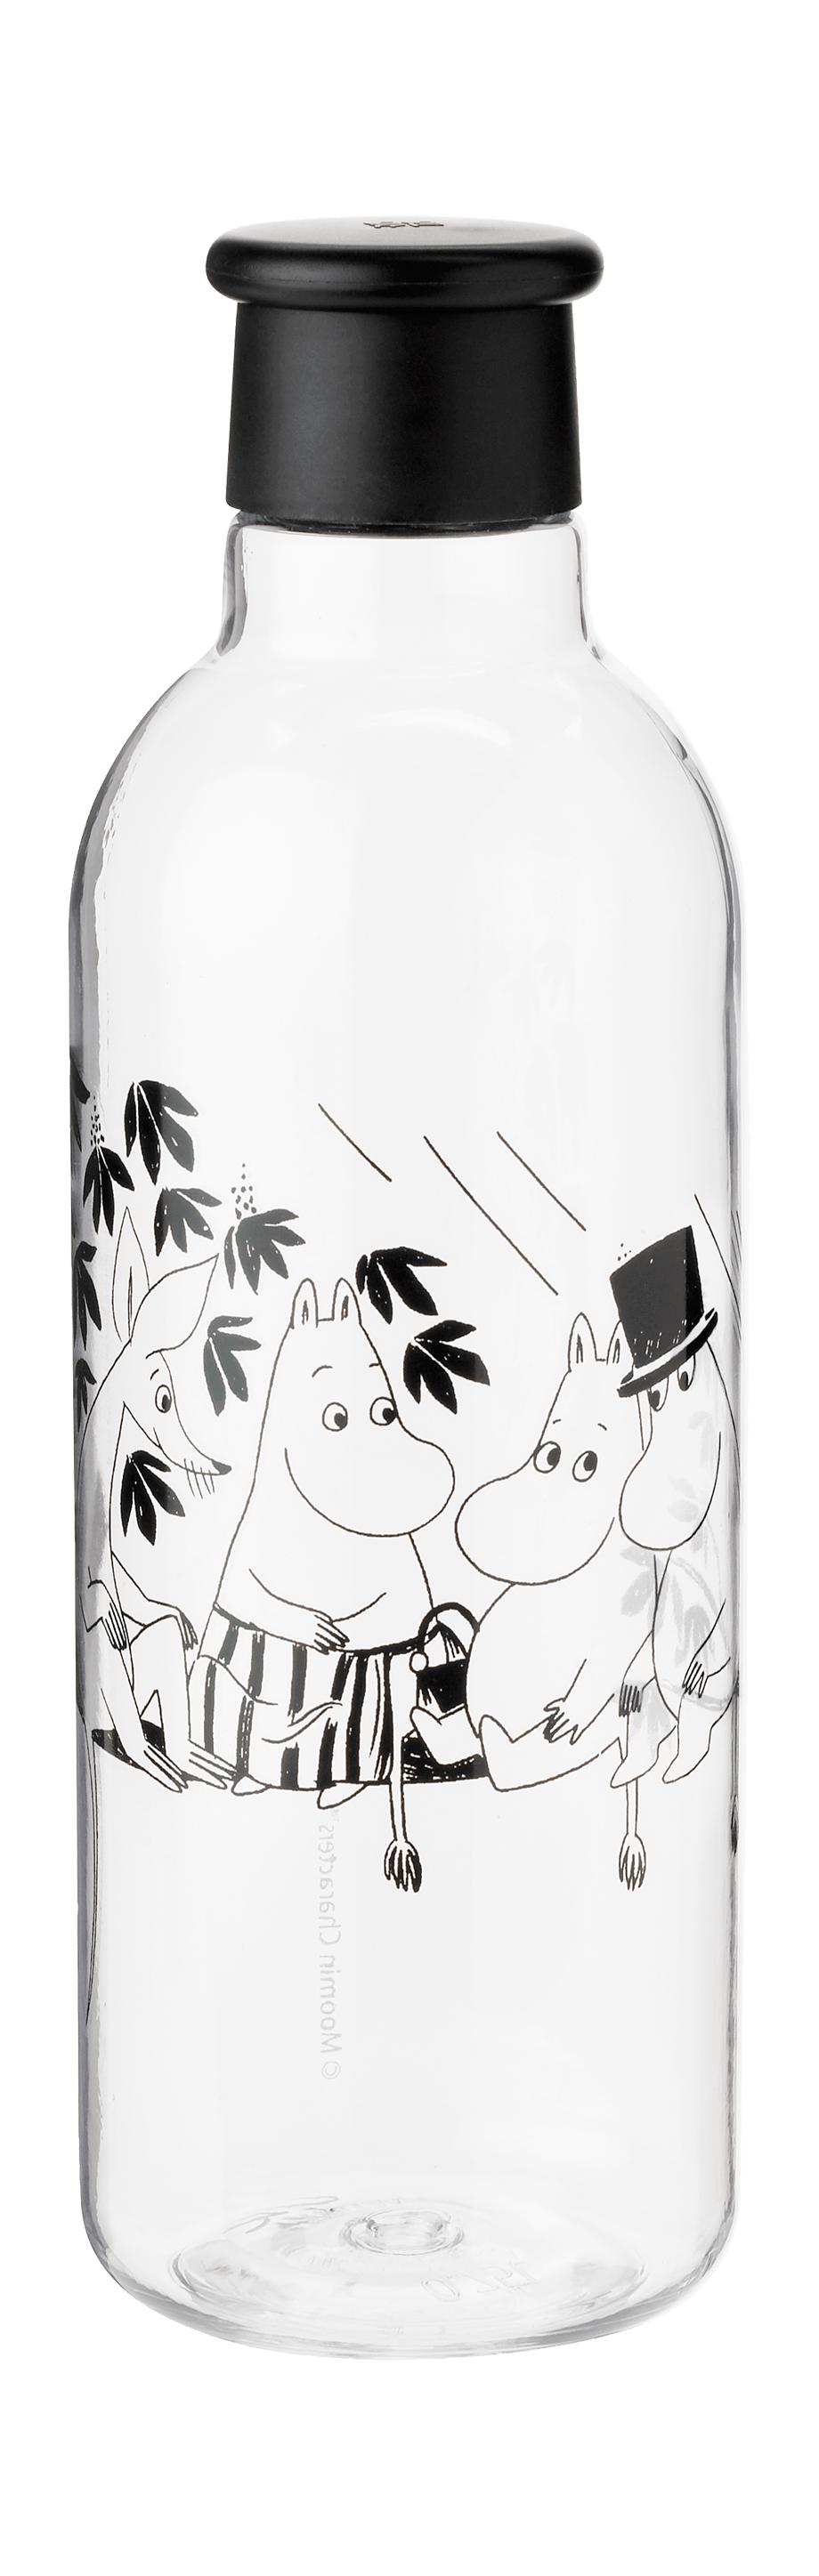 Rig-Tig Rig-Tig X Moomin Drikkeflaske II 0,75 L, Moomin Sort